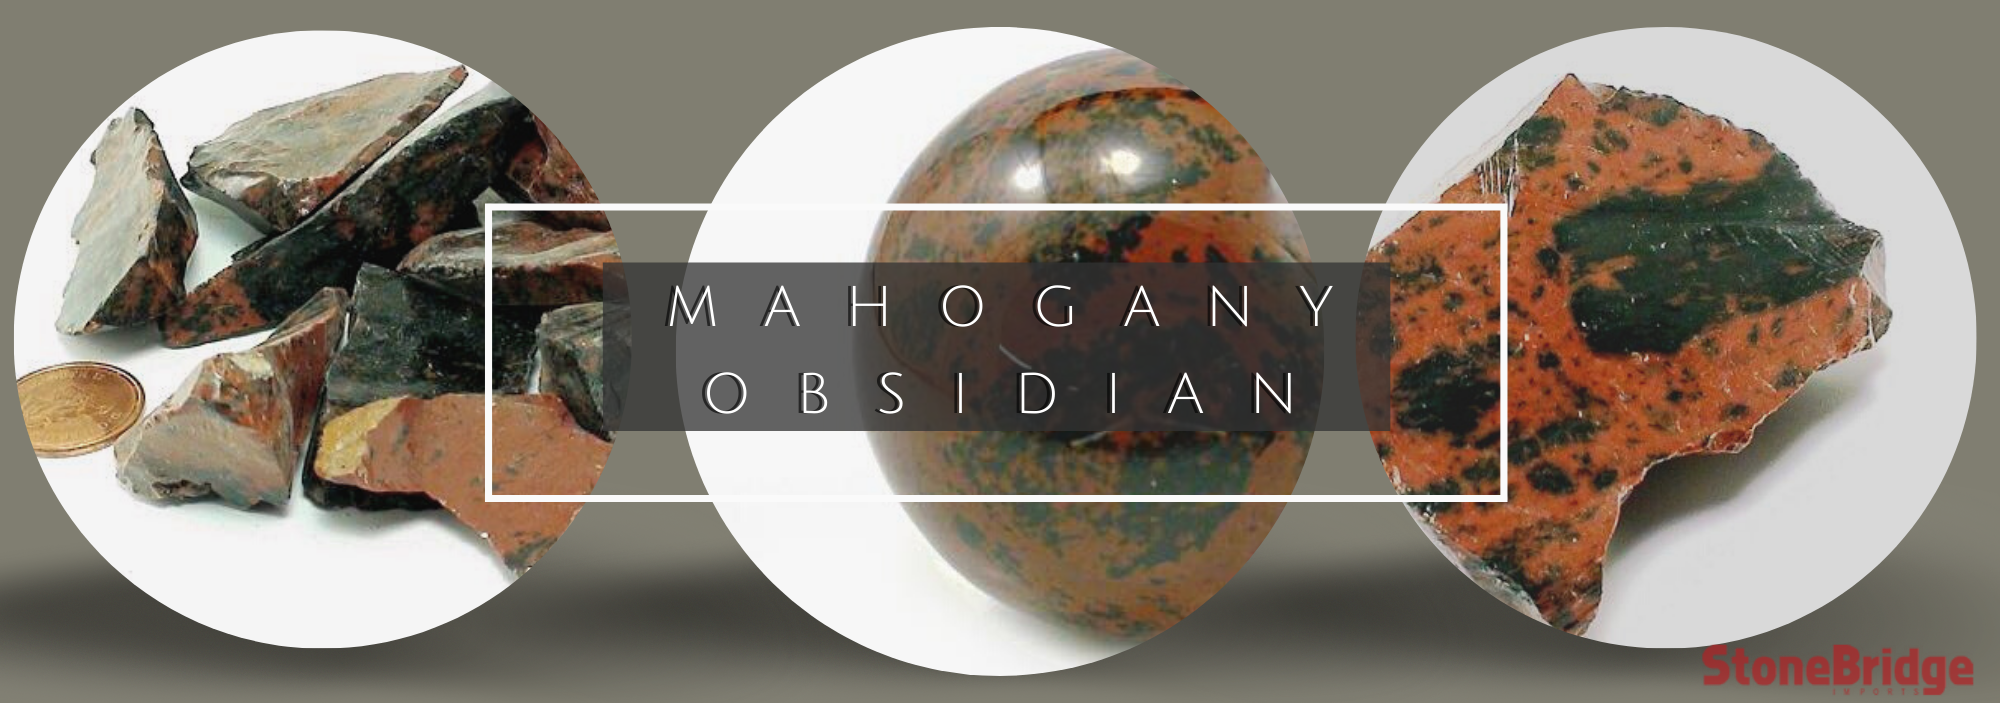 Obsidian - Wikipedia